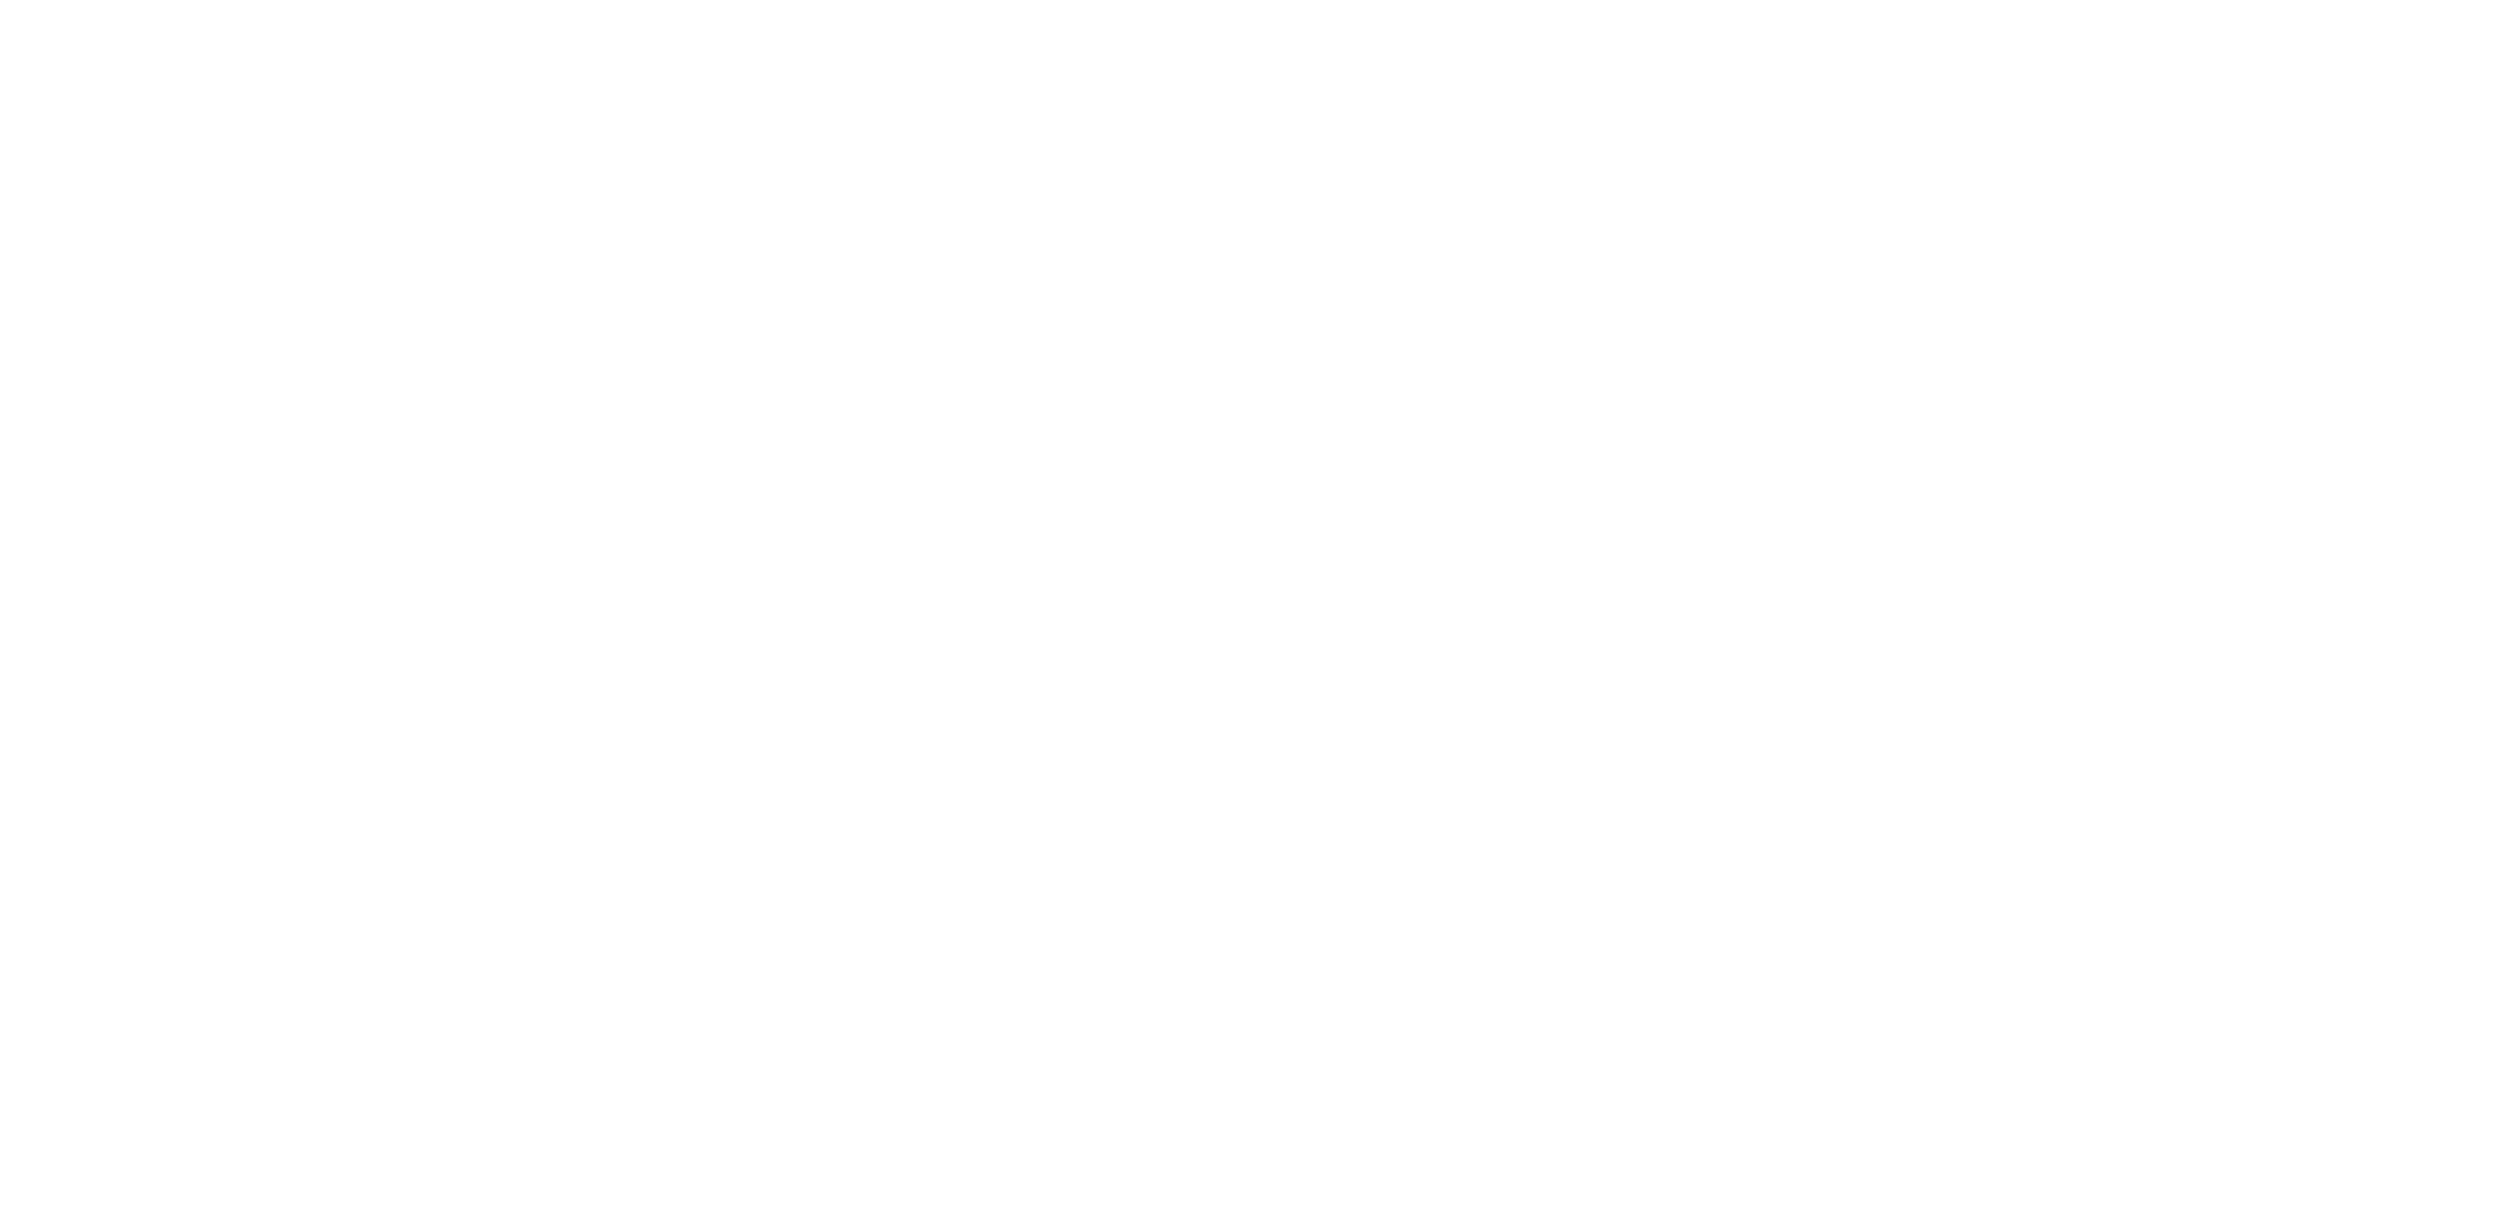 Bloomfield 55-Plus Senior Living in Omaha Nebraska Logo